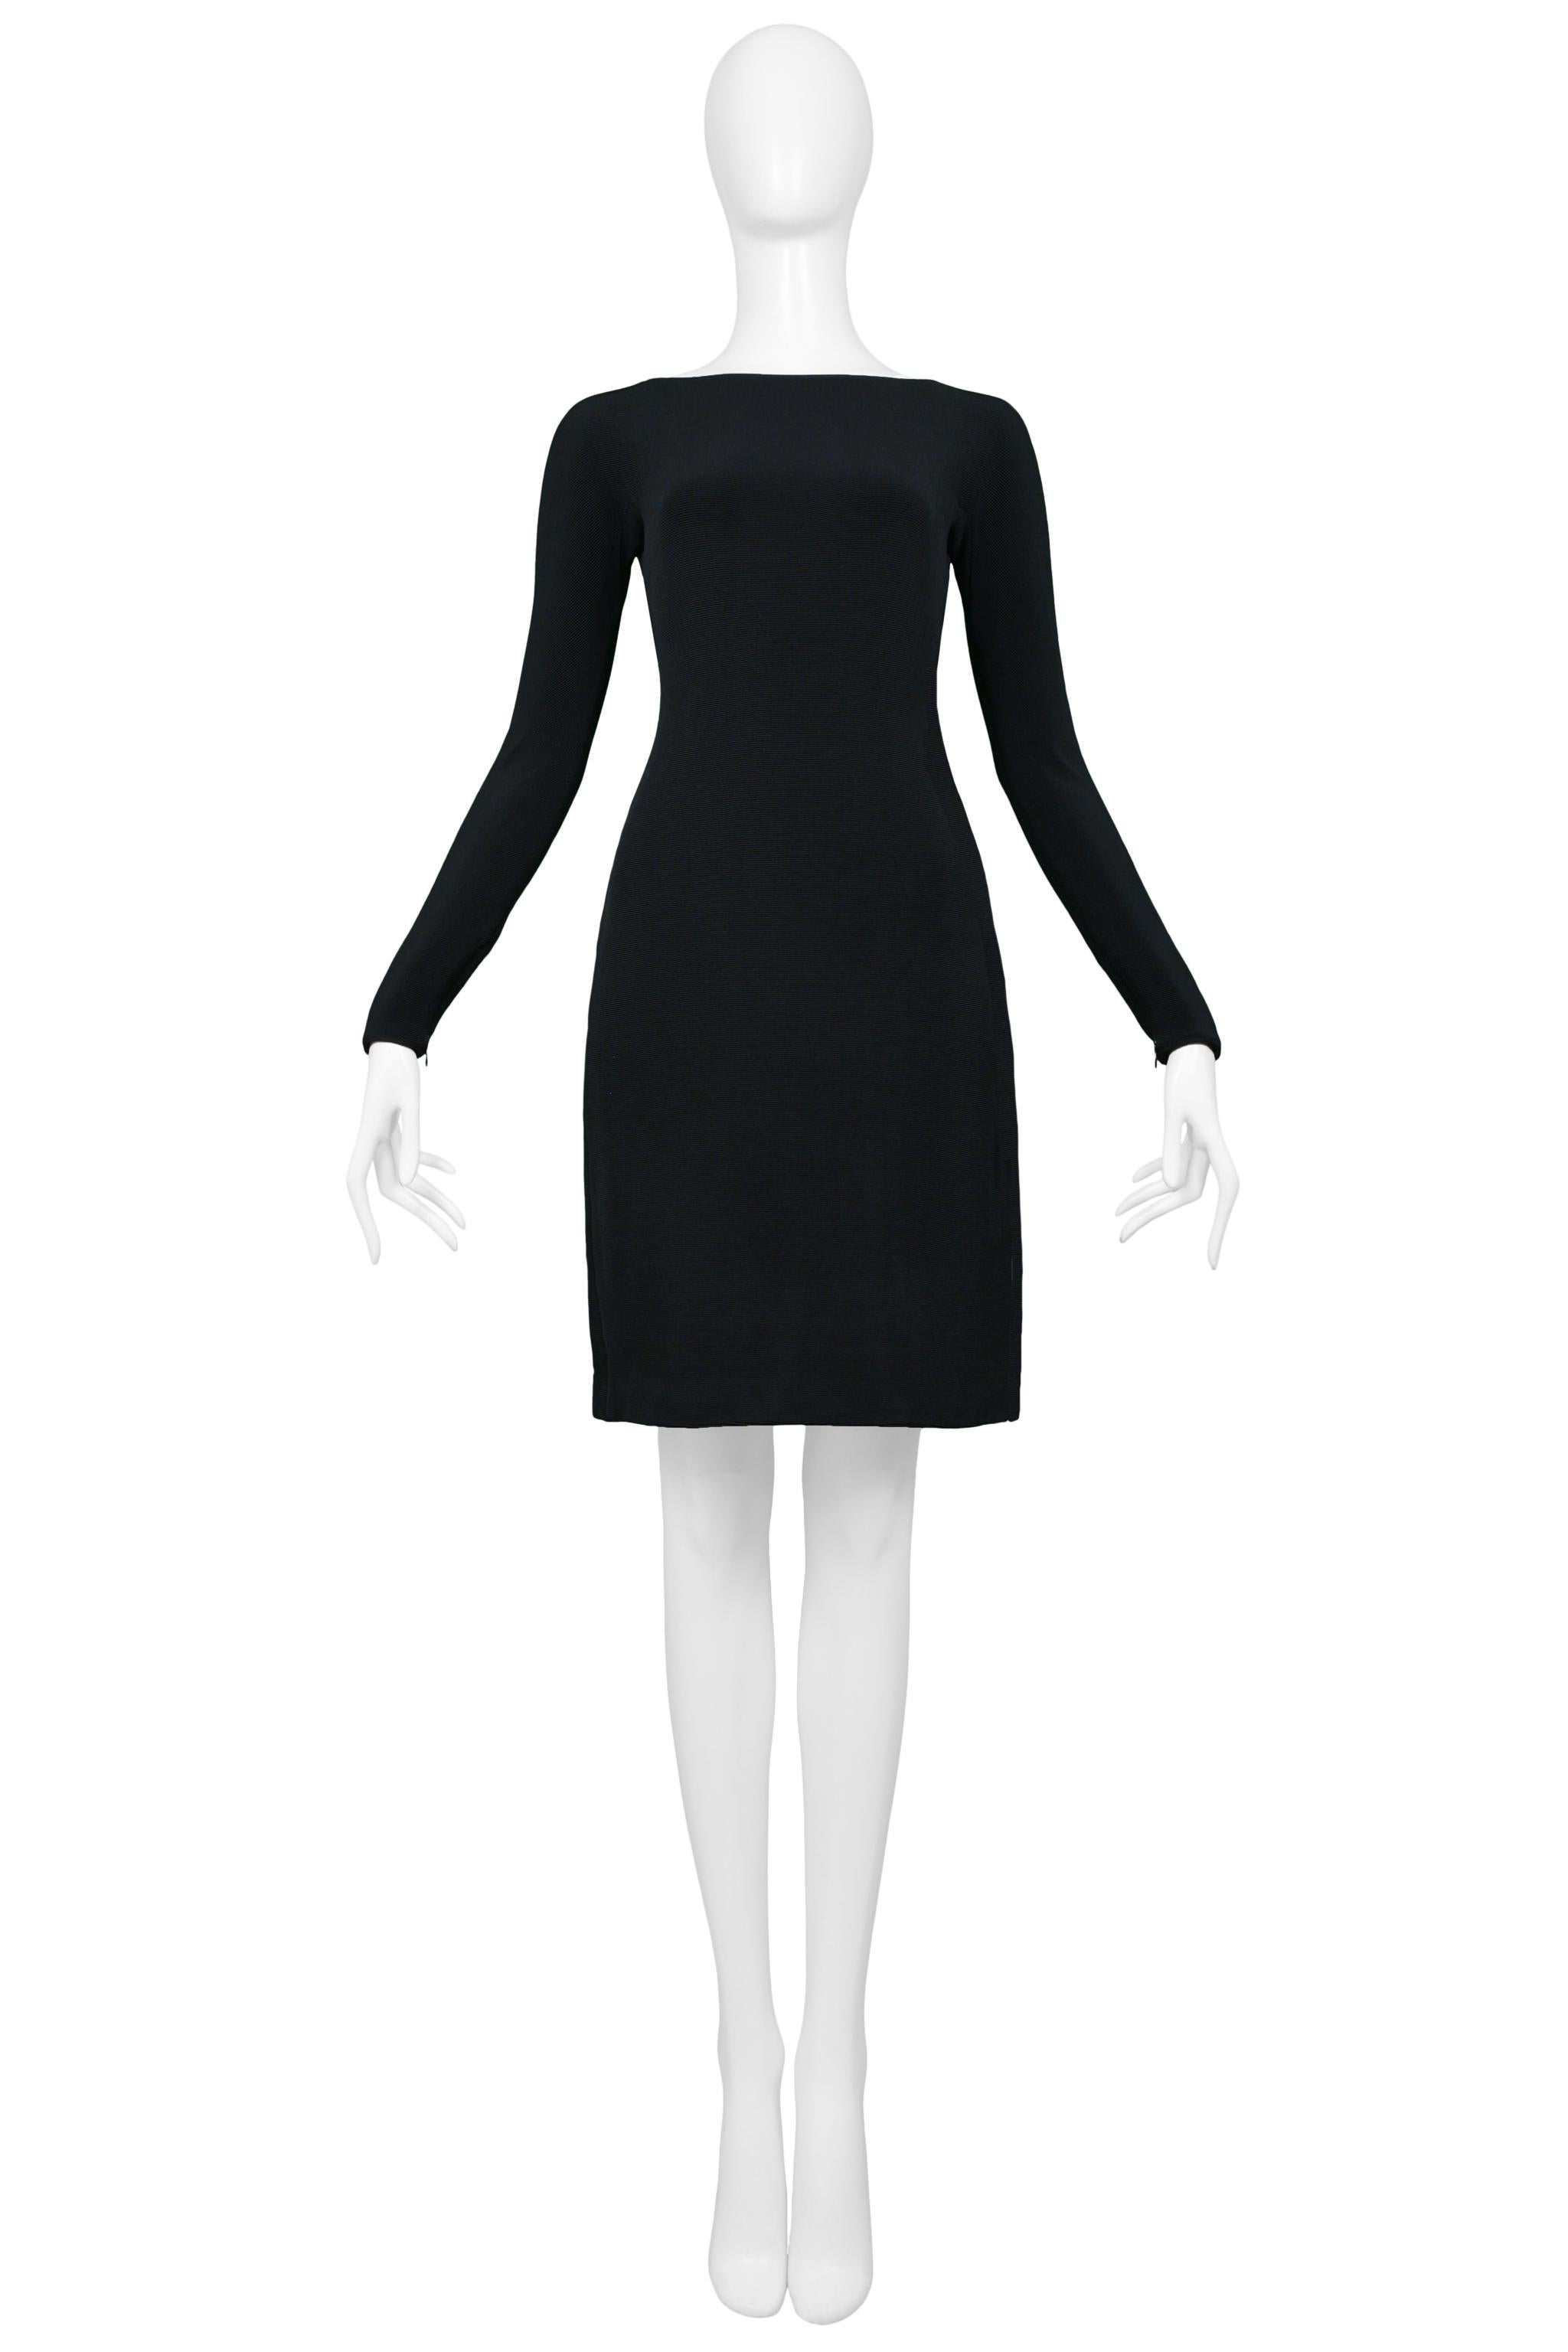 Resurrection Vintage a le plaisir de vous proposer une mini robe de cocktail bodycon noire vintage Gianni Versace avec tissu côtelé, manches longues, bouton Medusa, dos découpé et longueur au-dessus du genou. 

Versace 
Absence d'étiquette de taille